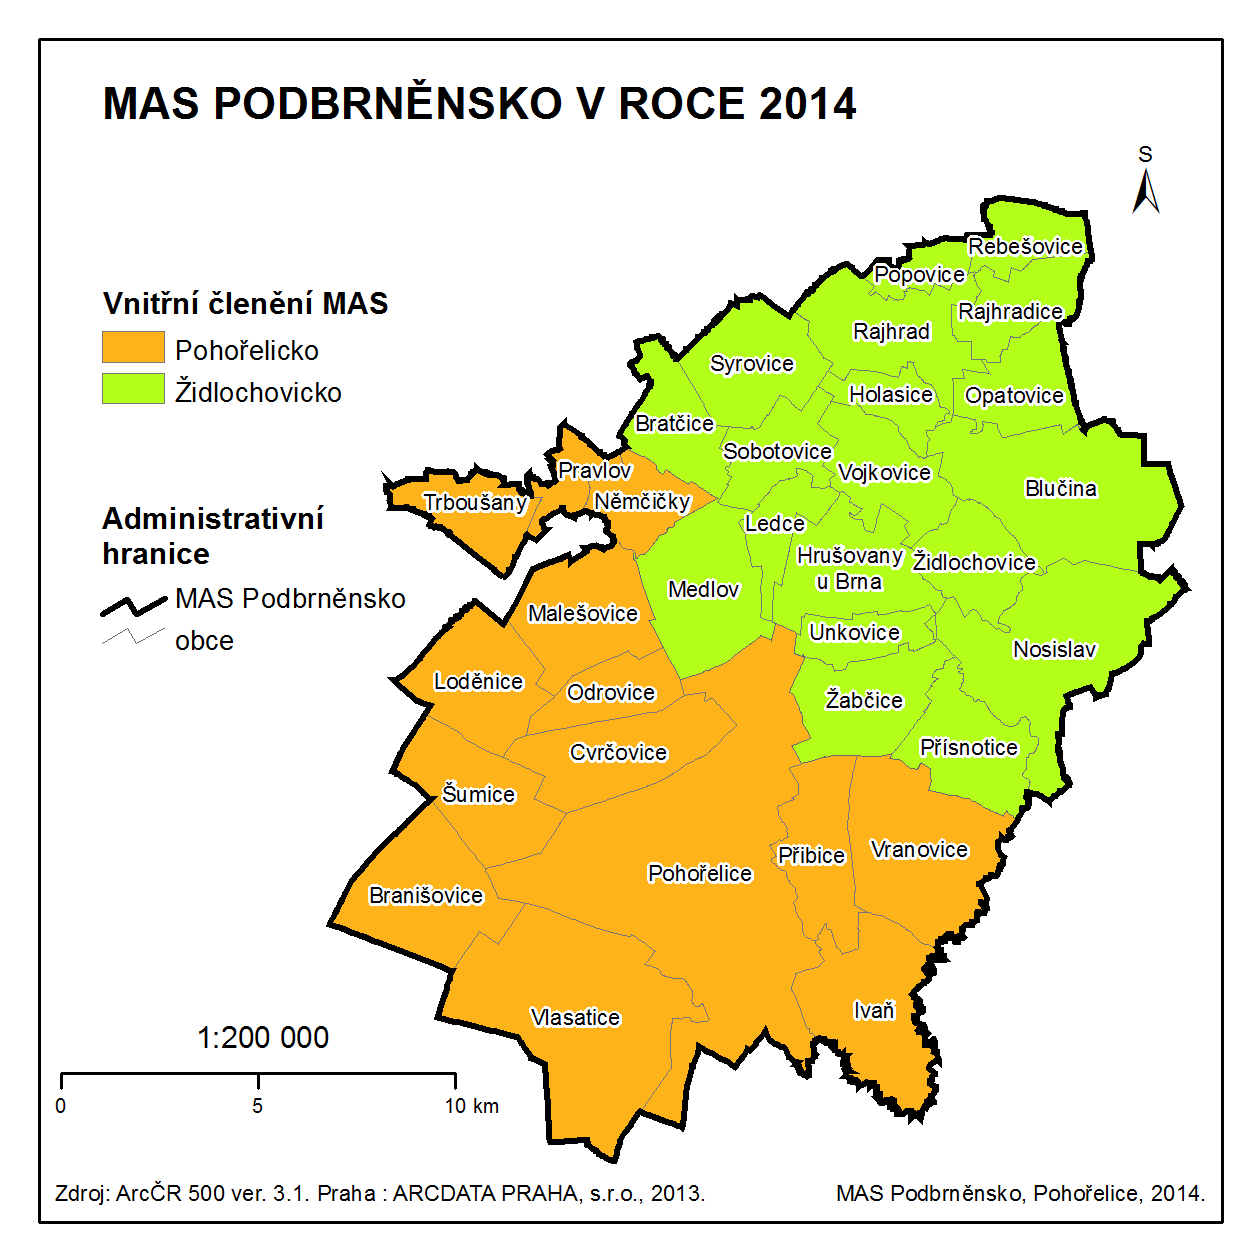 Obr. 4: Vnitřní členění MAS Podbrněnsko Území MAS Podbrněnsko zahrnuje spádovou oblast Židlochovic, Pohořelic a Rajhradu.